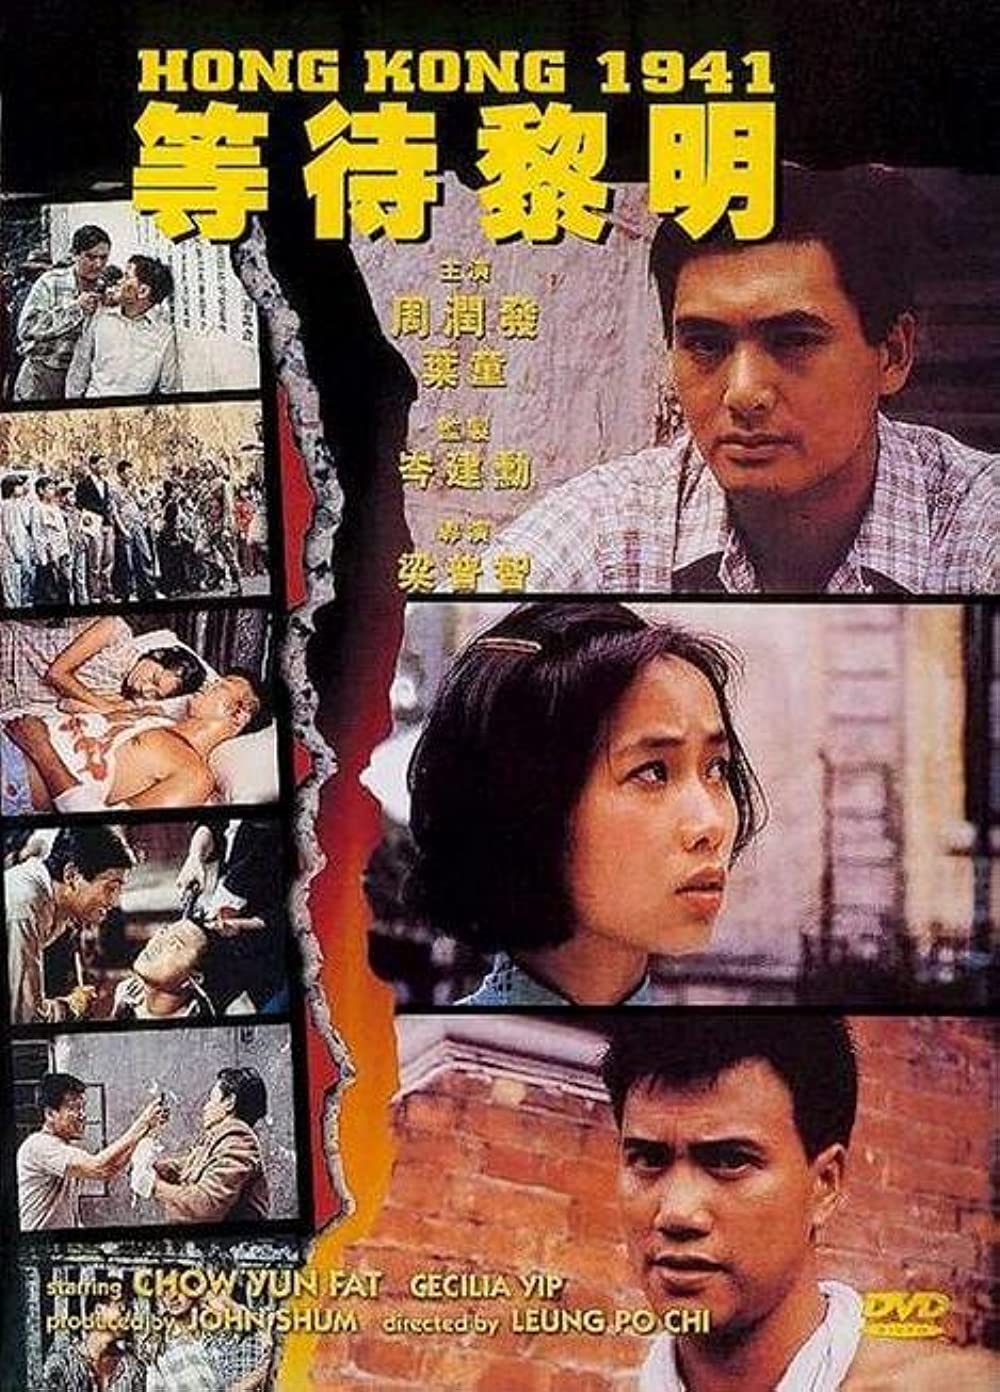 ดูหนังออนไลน์ฟรี Hong Kong 1941 (1984) โหดผสมโหด หนังเต็มเรื่อง หนังมาสเตอร์ ดูหนังHD ดูหนังออนไลน์ ดูหนังใหม่